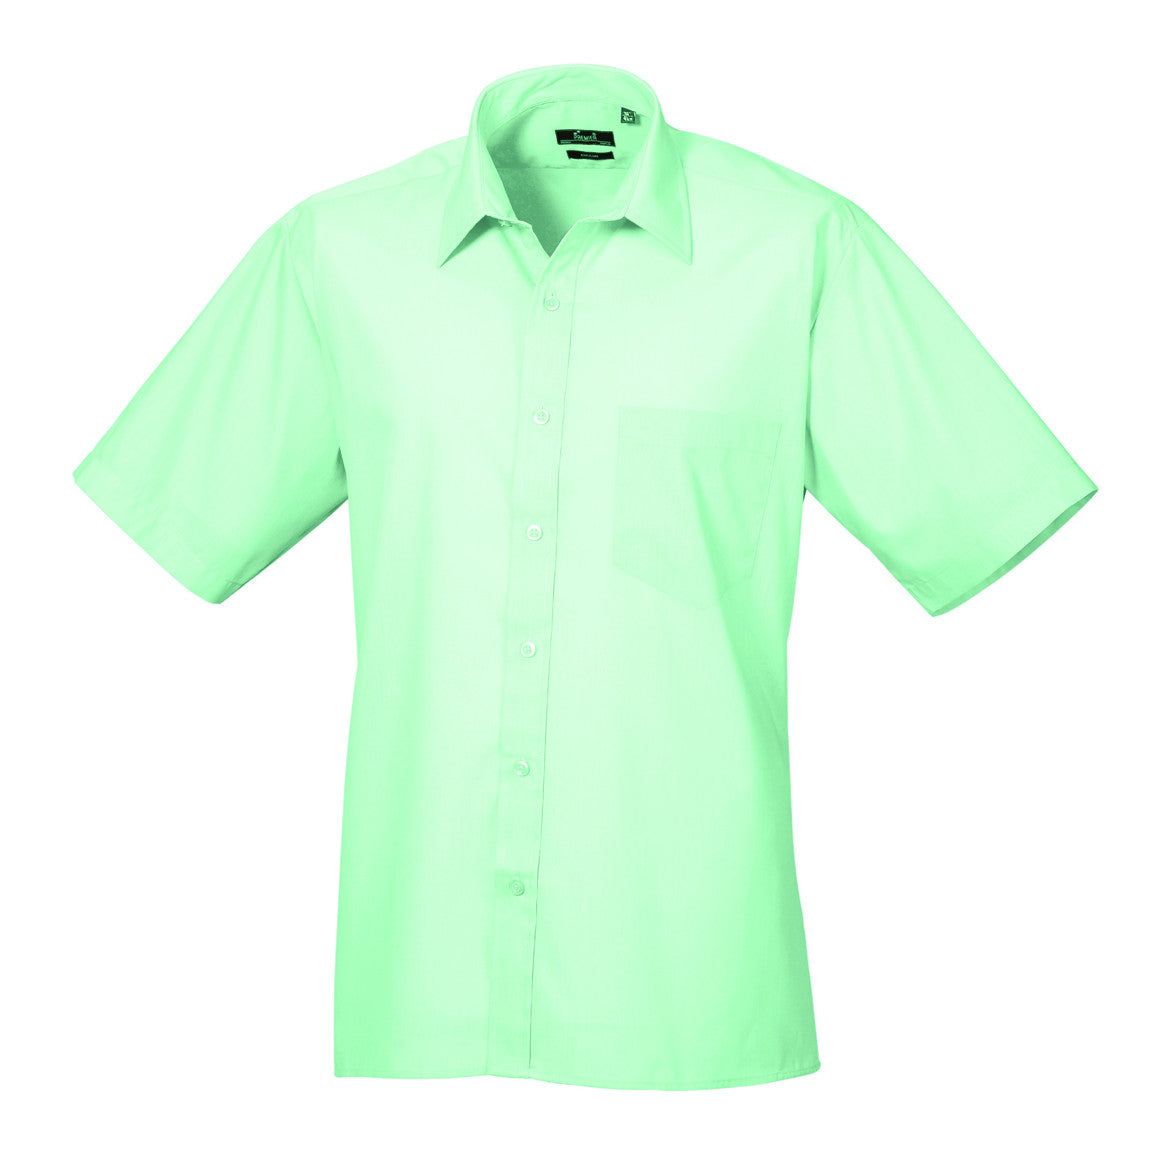 Premier Poplin Shirts (Emerald, Aqua, Natural, Khaki, Mocha) - peterdrew.com
 - 3